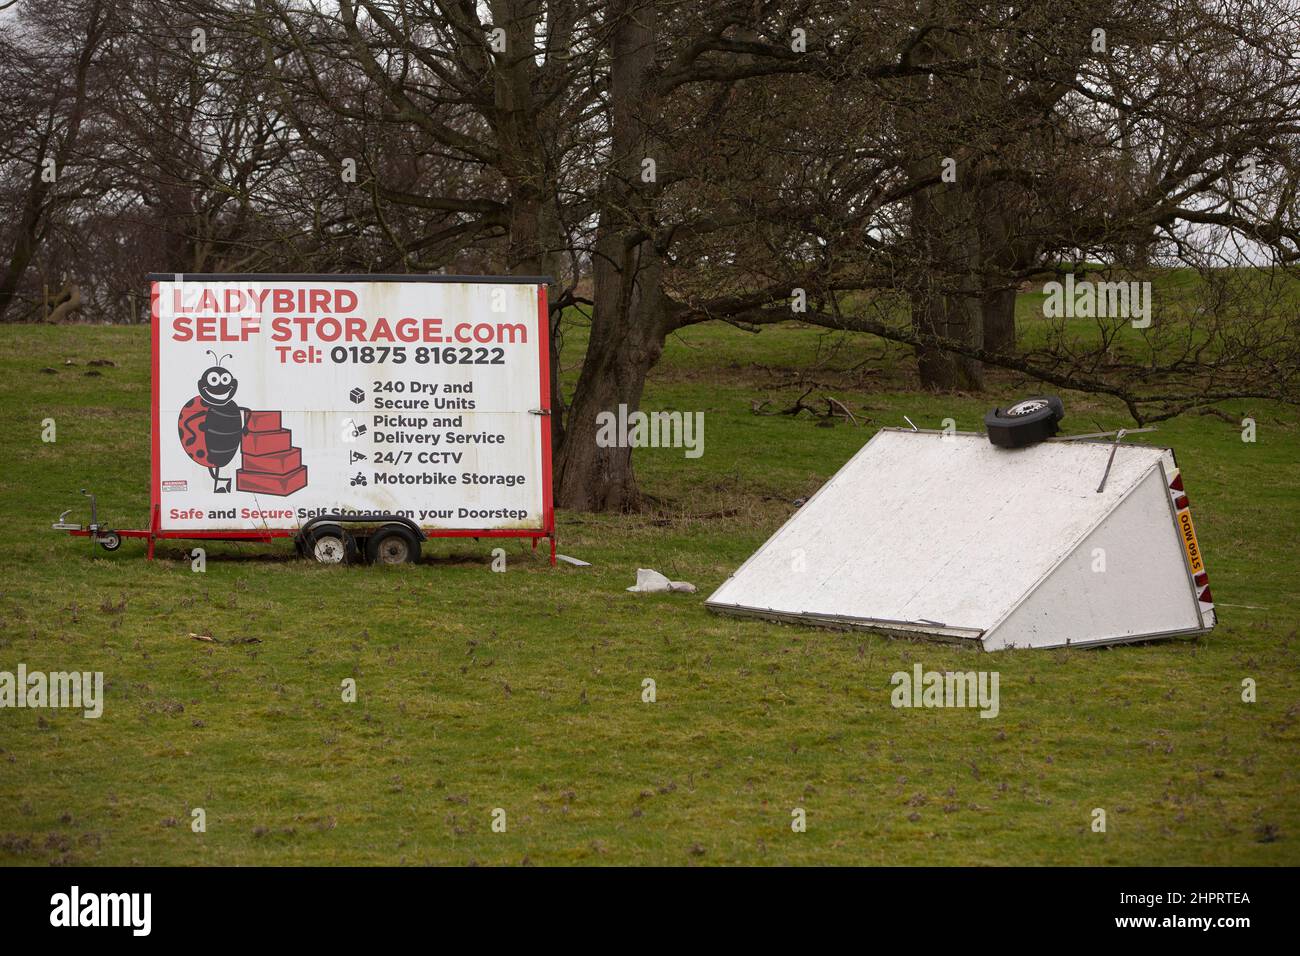 ÉDIMBOURG, le 23rd février 2022. Le temps à Édimbourg. Écosse. Une publicité a été diffusée en raison du vent. Pic Credit: Pako Mera/Alay Live News Banque D'Images